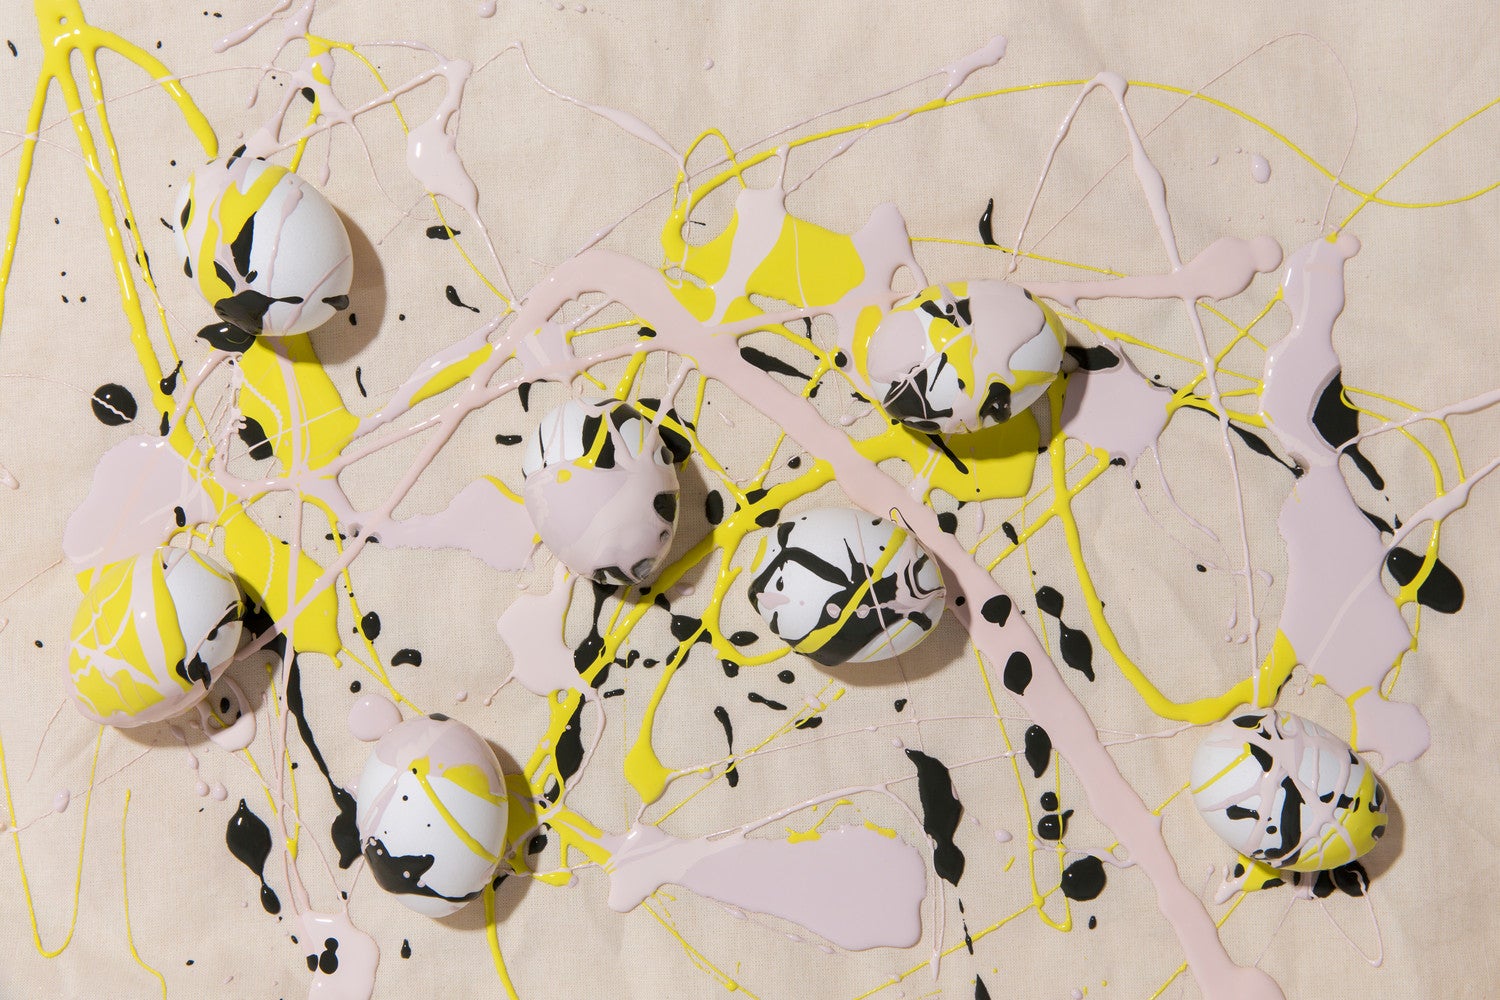 paint-splattered Easter eggs